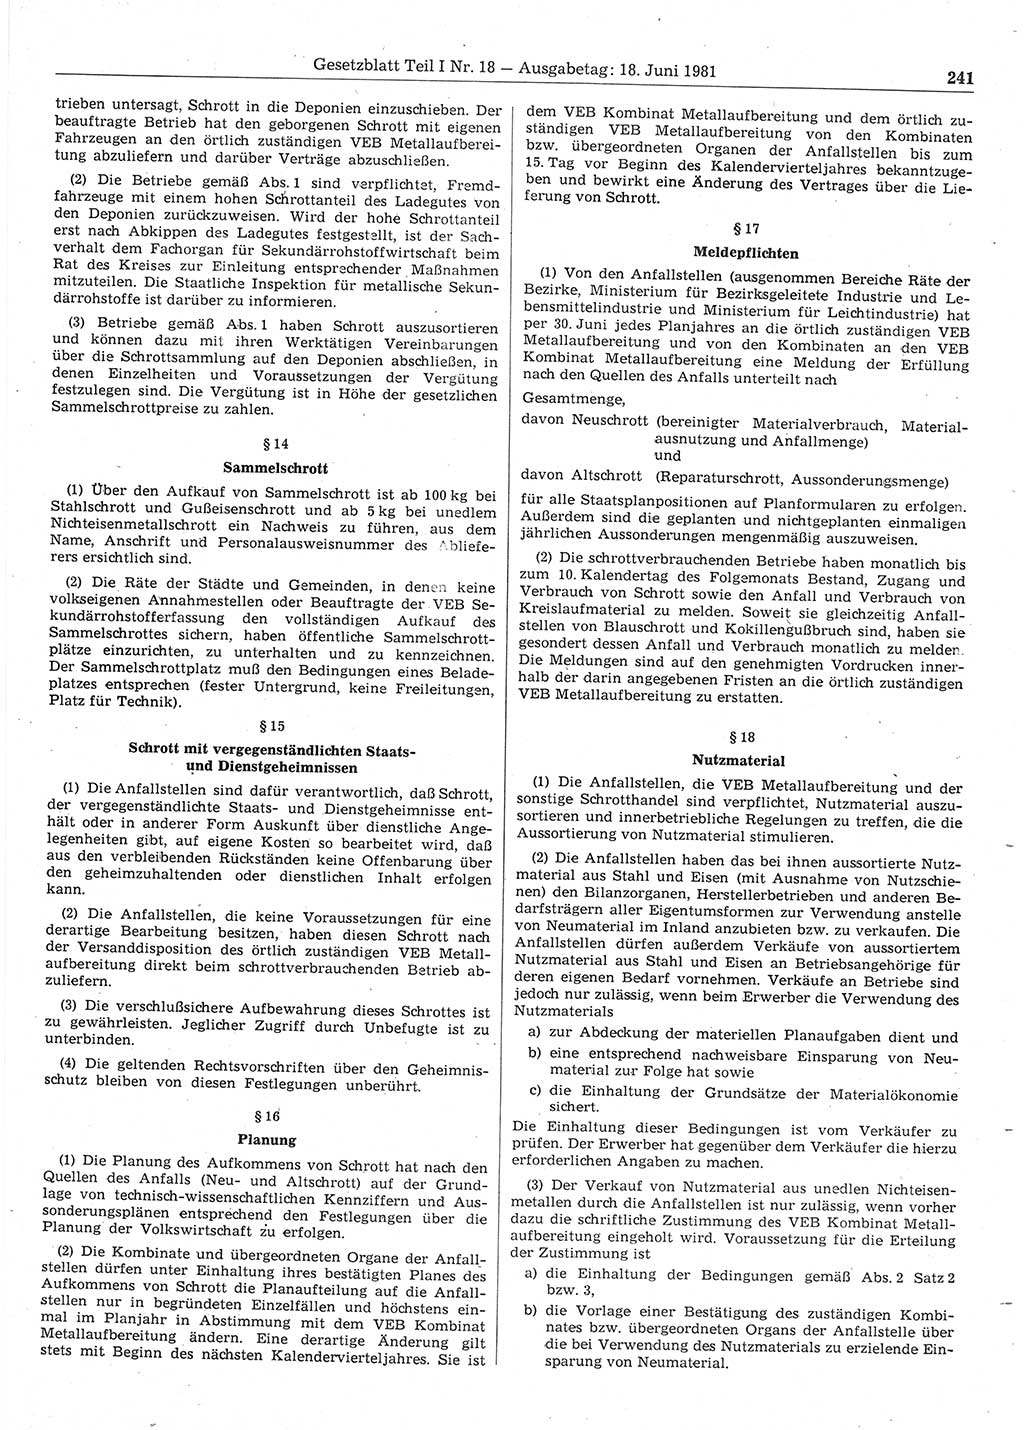 Gesetzblatt (GBl.) der Deutschen Demokratischen Republik (DDR) Teil Ⅰ 1981, Seite 241 (GBl. DDR Ⅰ 1981, S. 241)